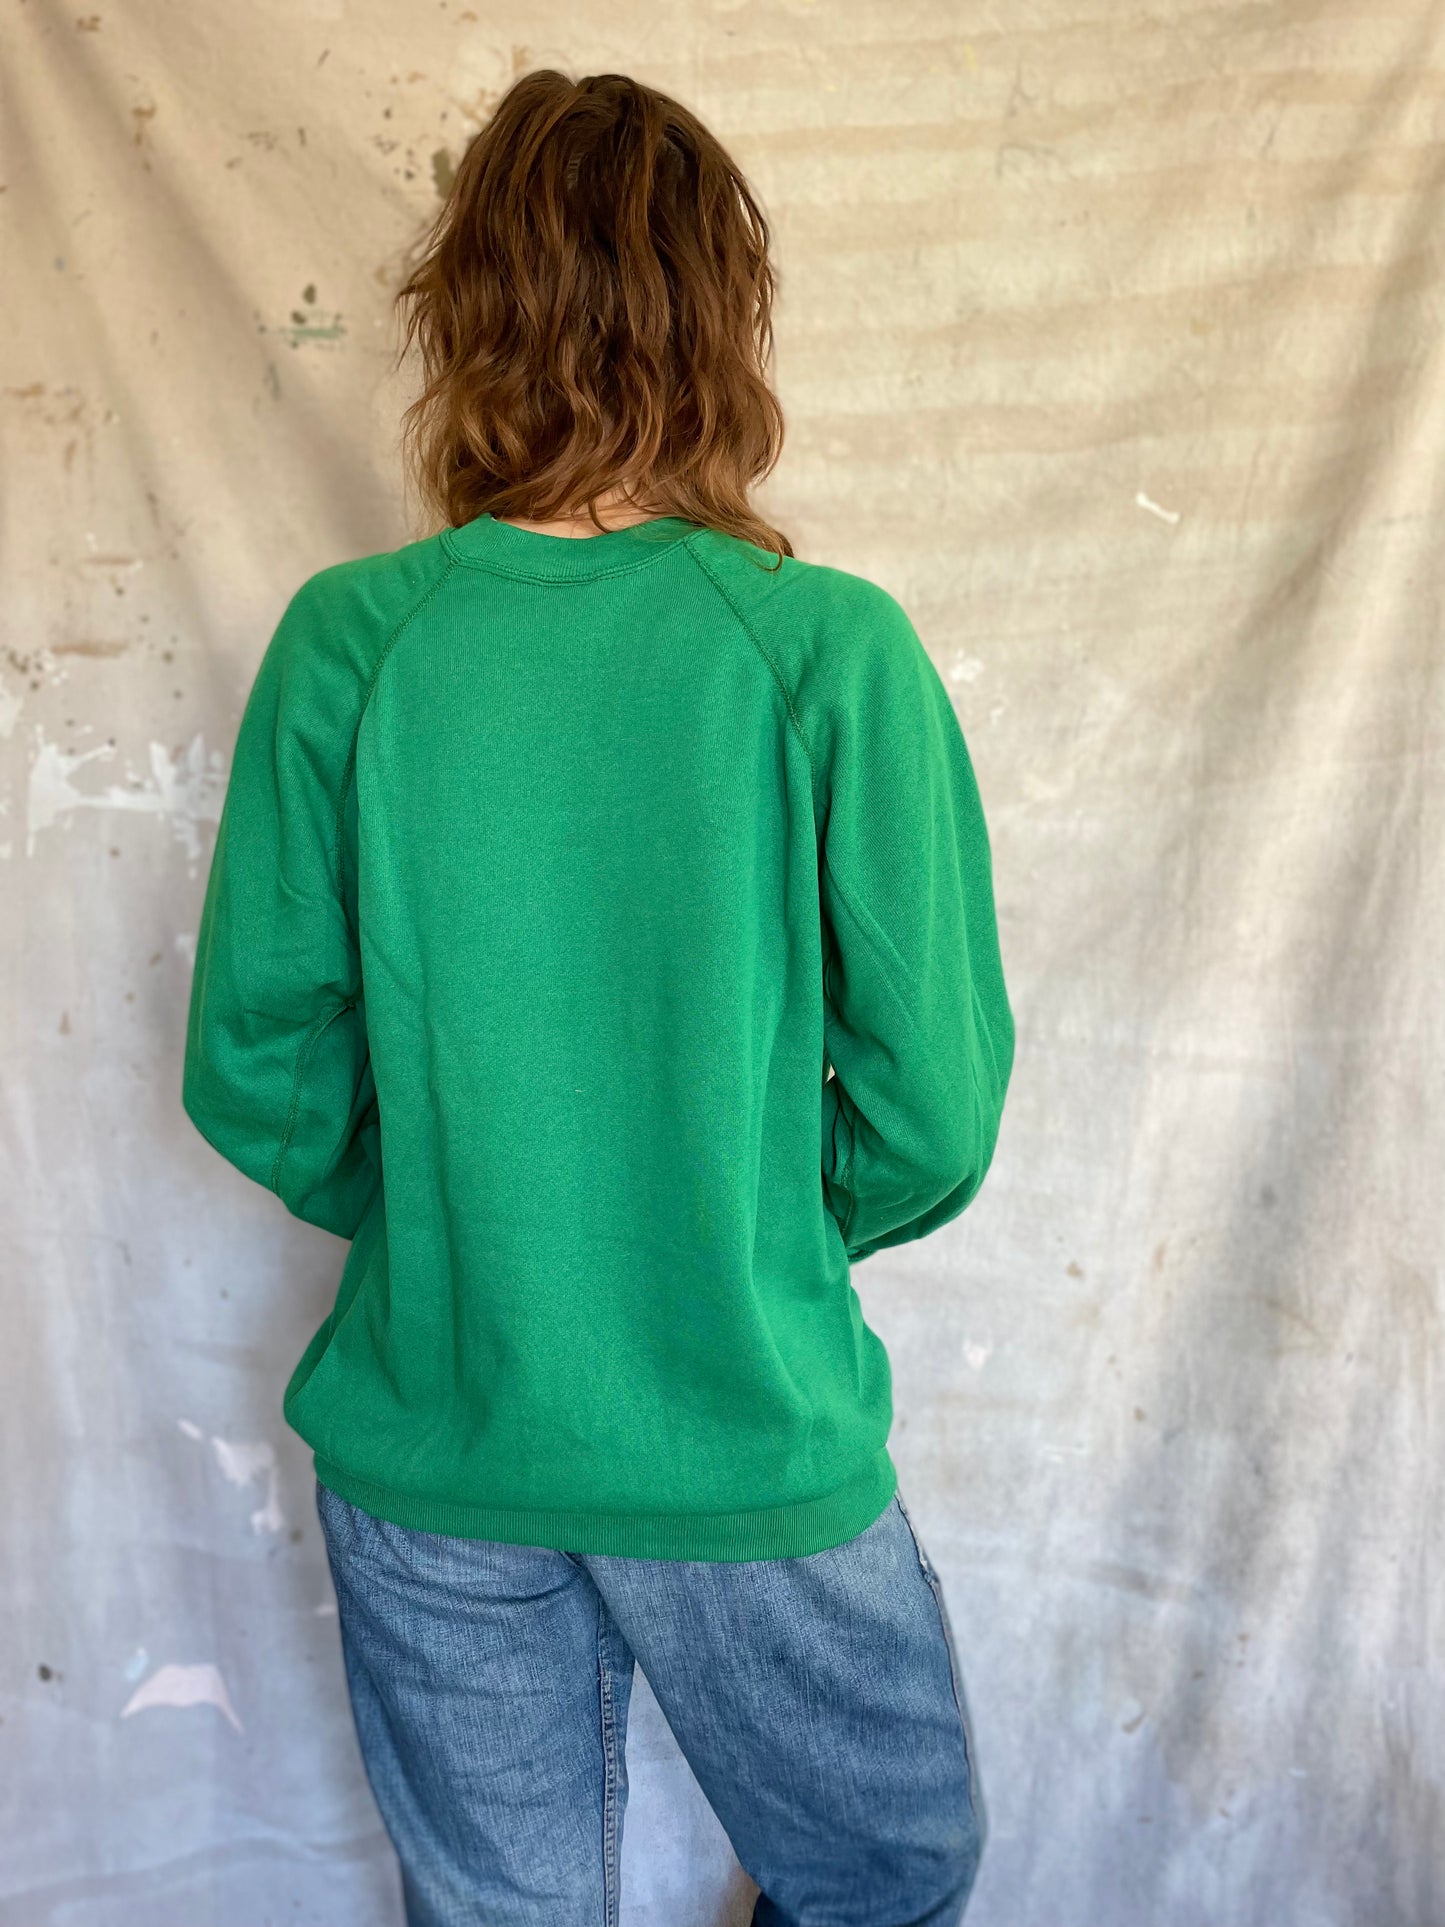 80s Deadstock Blank Green Sweatshirt